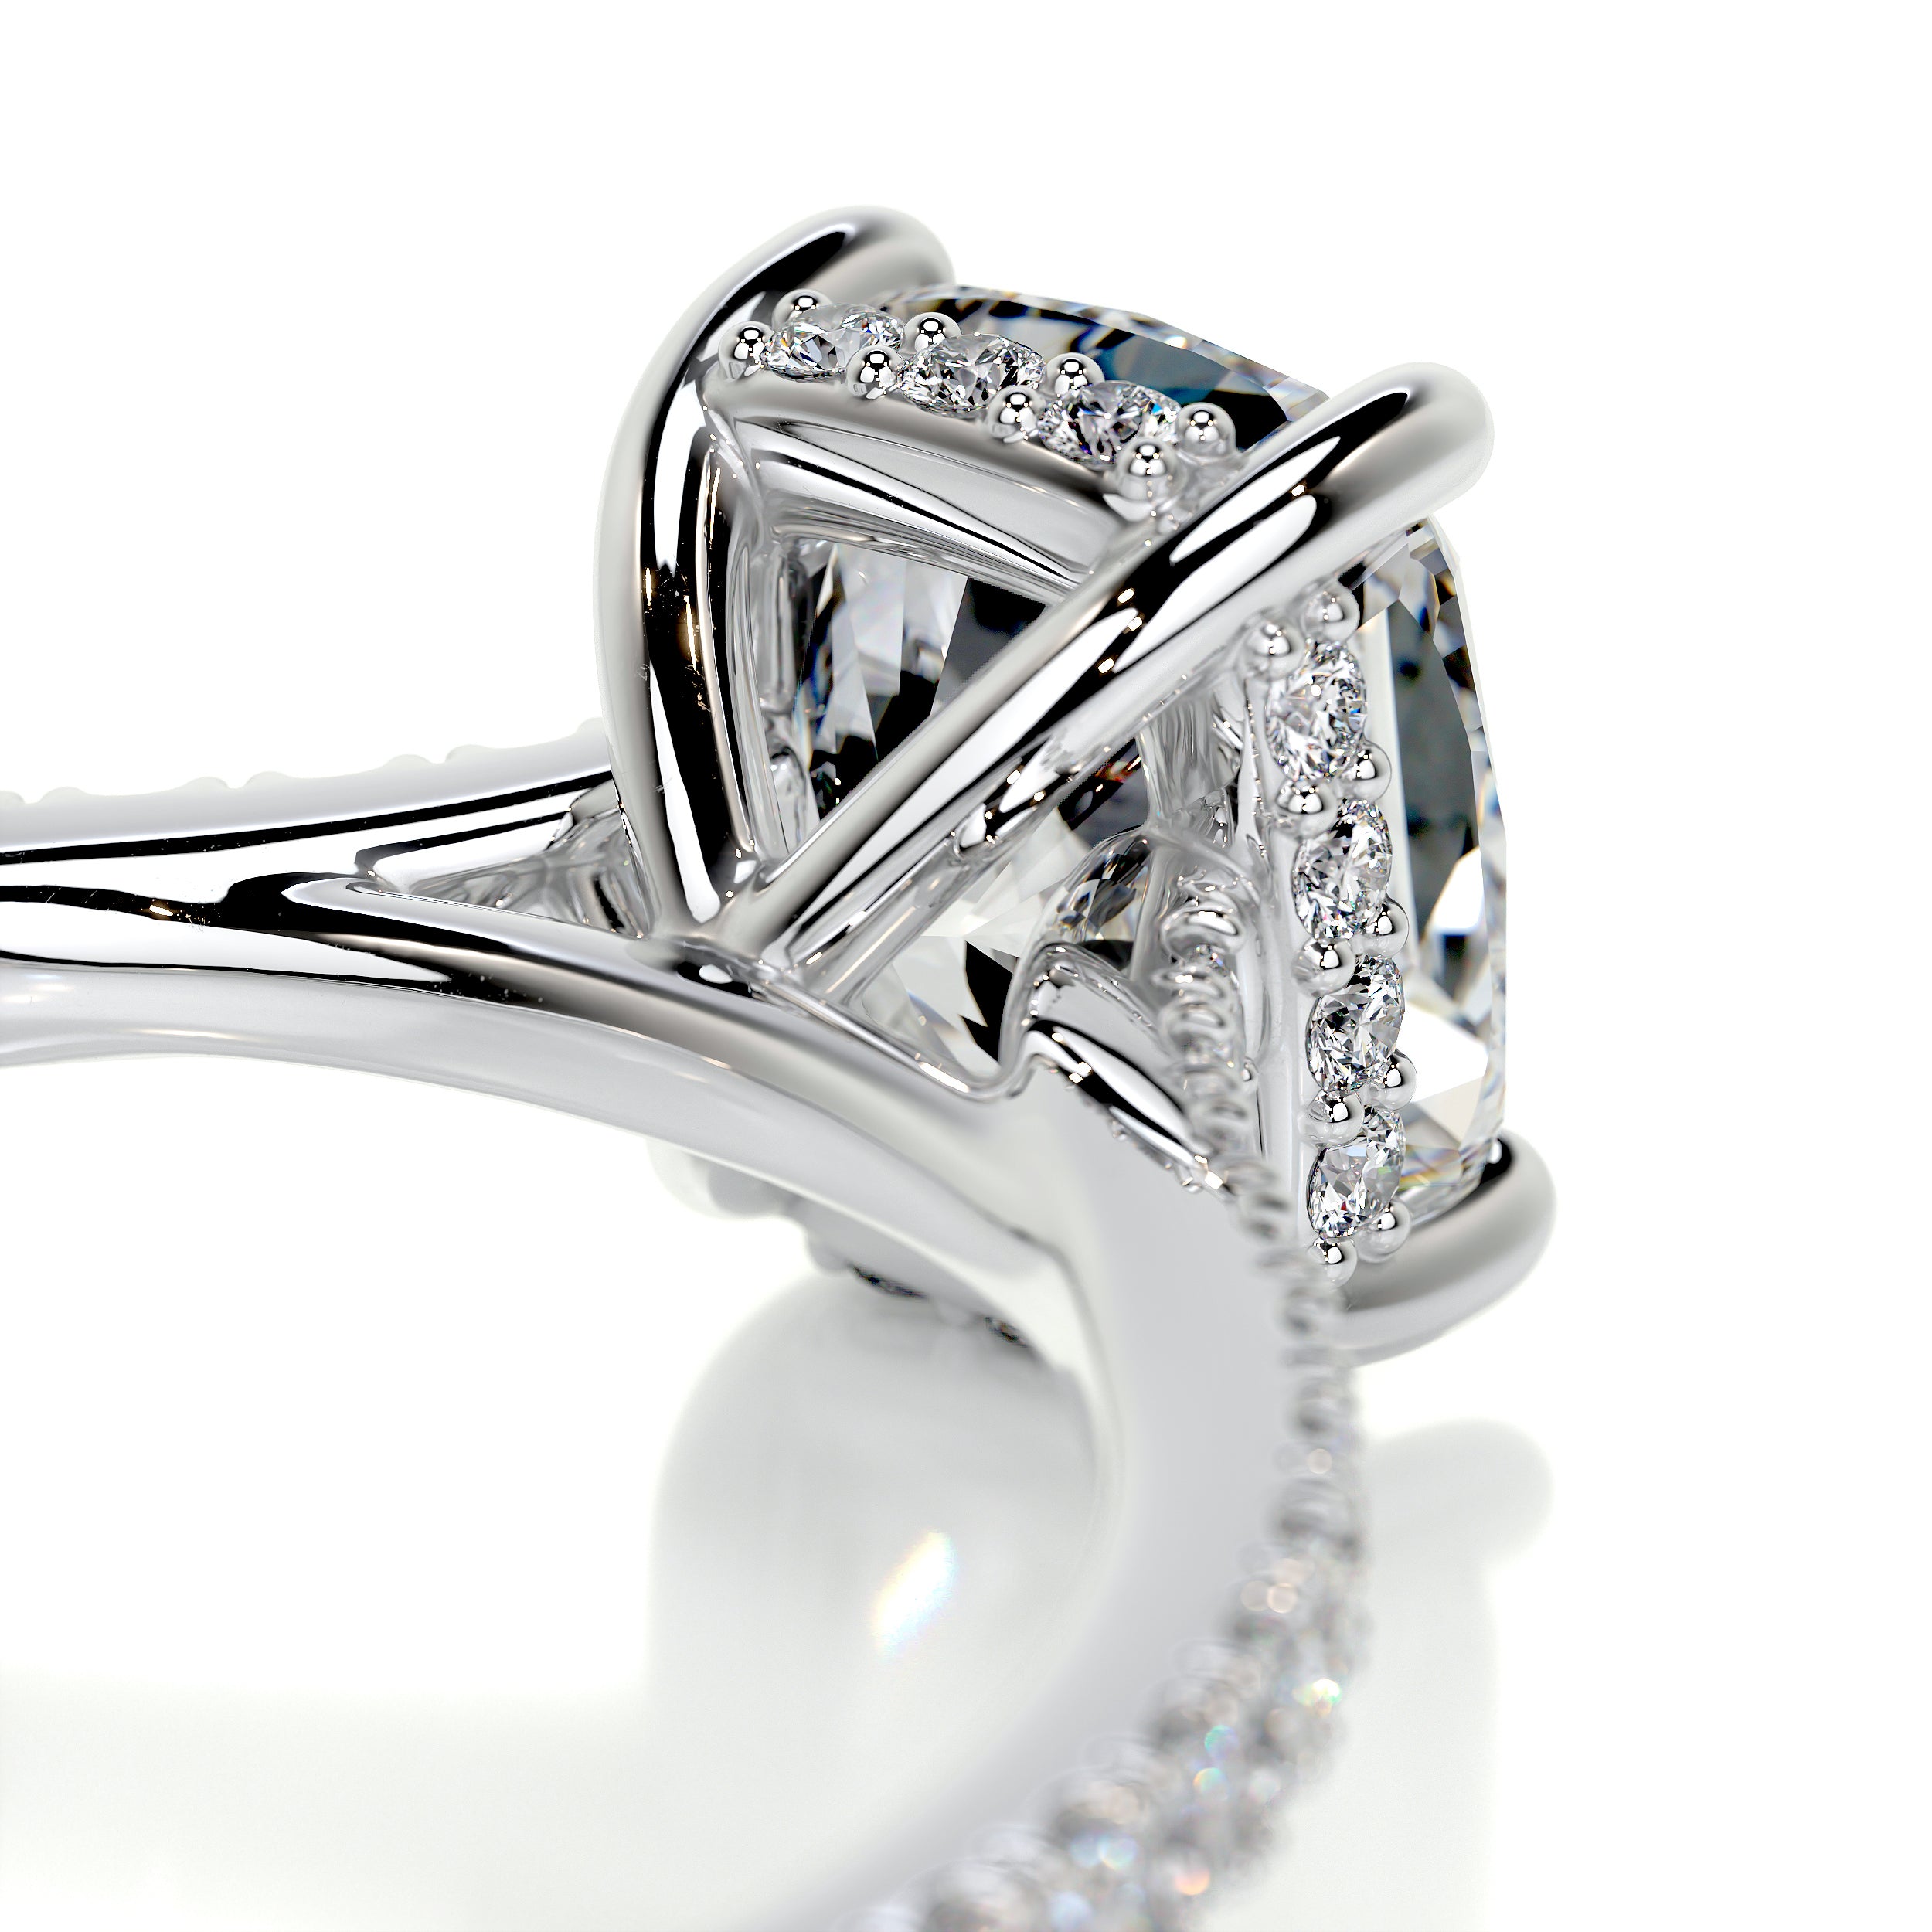 Deandra Diamond Engagement Ring   (1.75 Carat) -Platinum